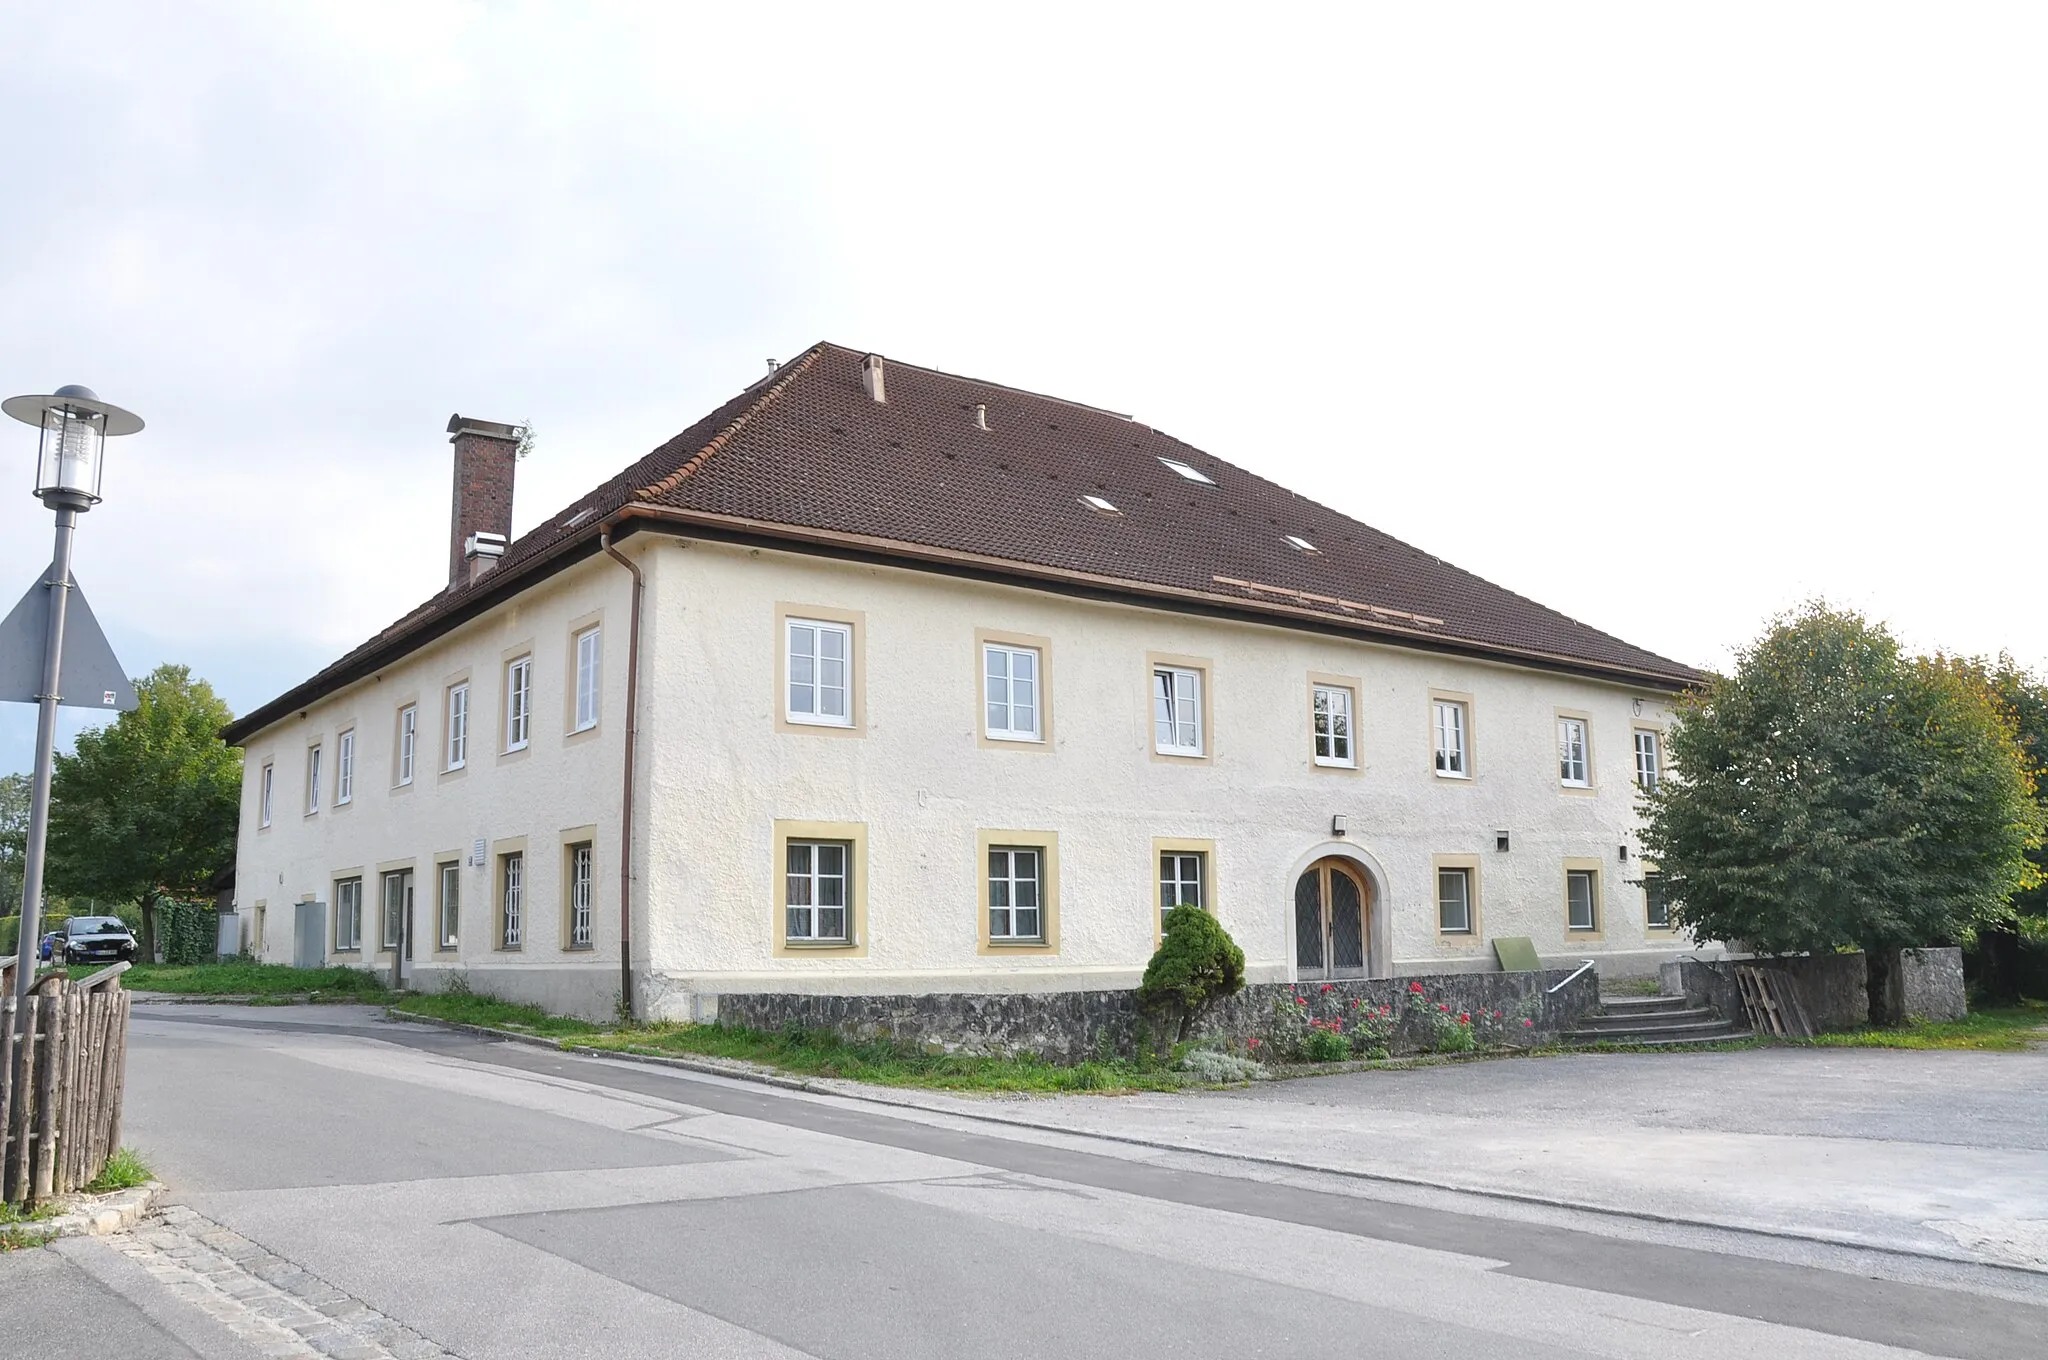 Photo showing: Ehemaliges Gasthaus Roider im Bad Reichenhaller Ortsteil Schwarzbach.
Aktennummer: D-1-72-114-218